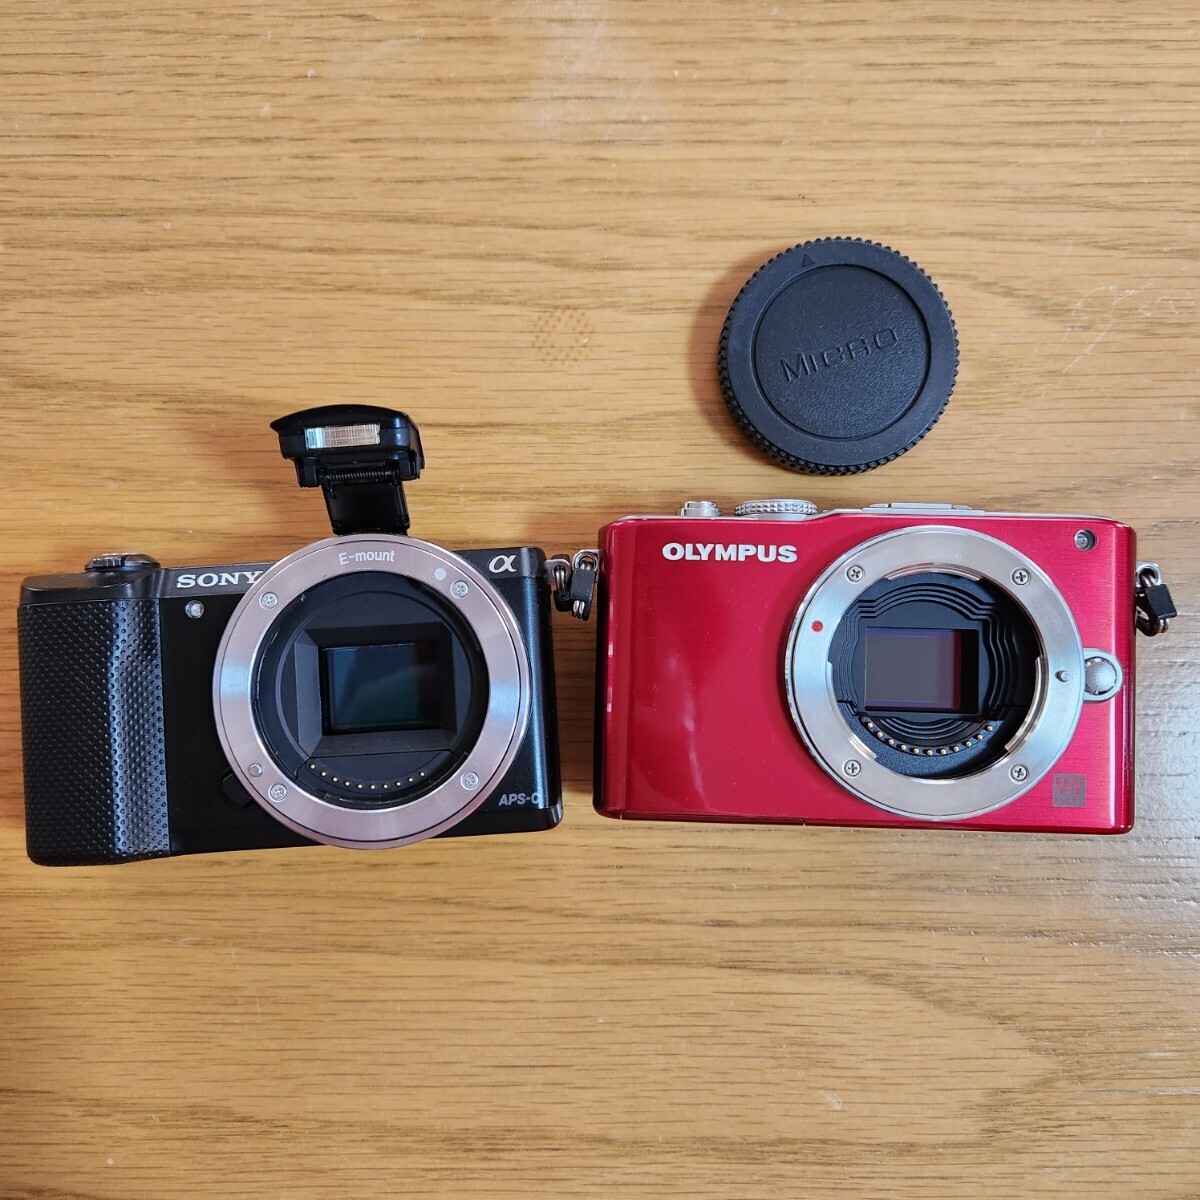 SONY Sony OLYMPUS Olympus α5000 PEN Lite E-PL3 беззеркальный однообъективный камера корпус черный красный 